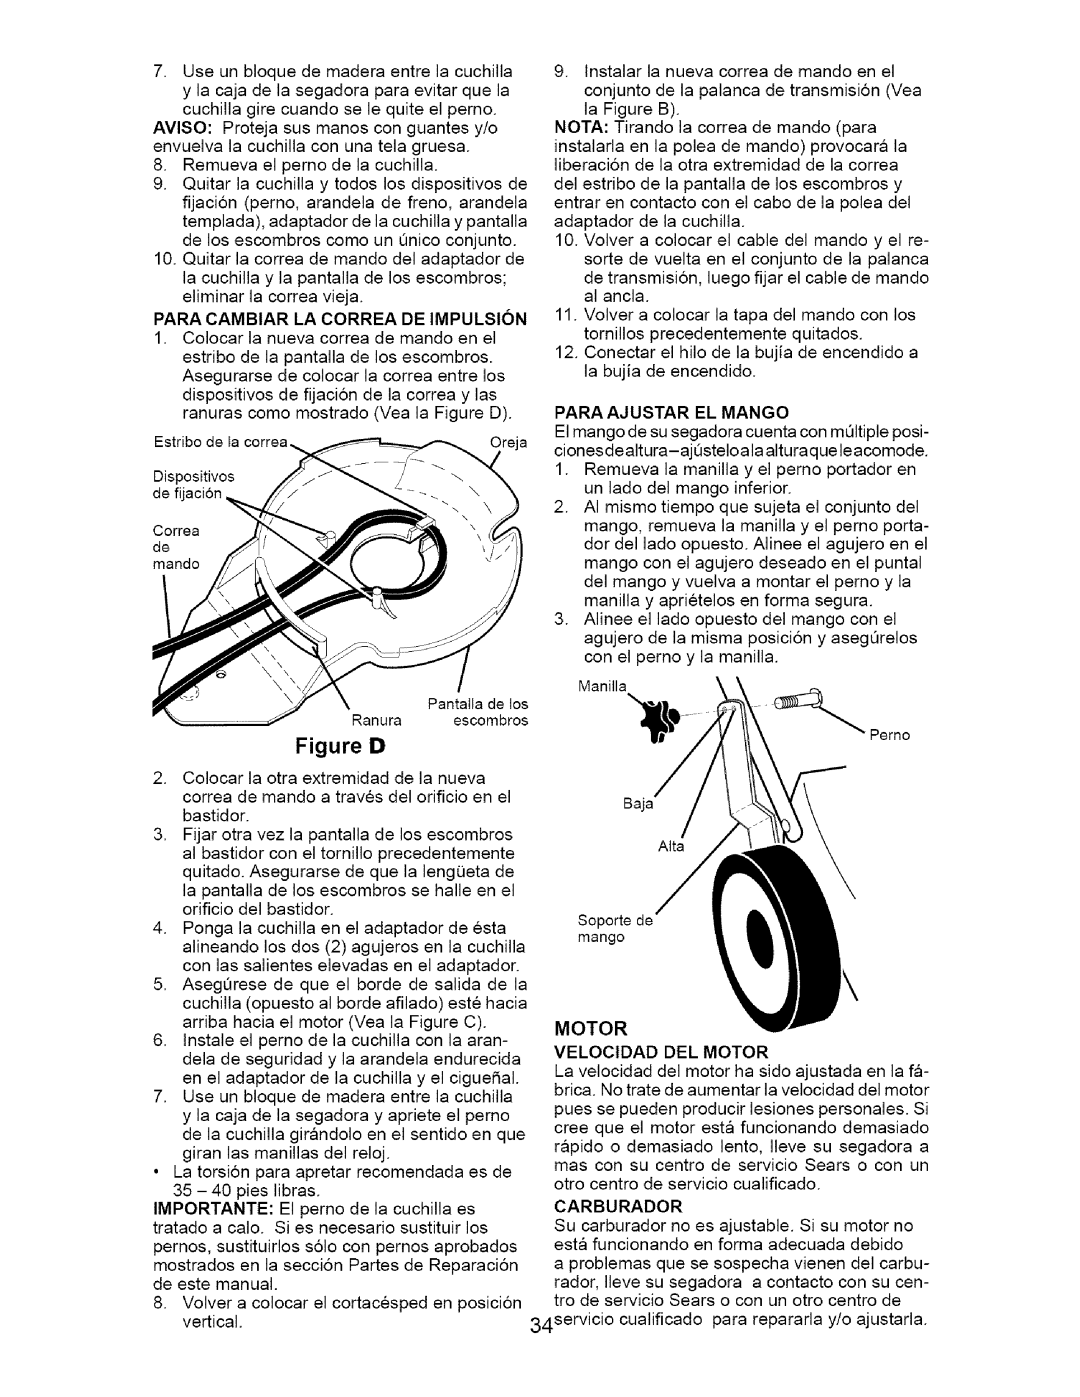 Craftsman 917.377011 owner manual Figure, Para Ajustar El Mango, Motor Velocidad Del Motor 